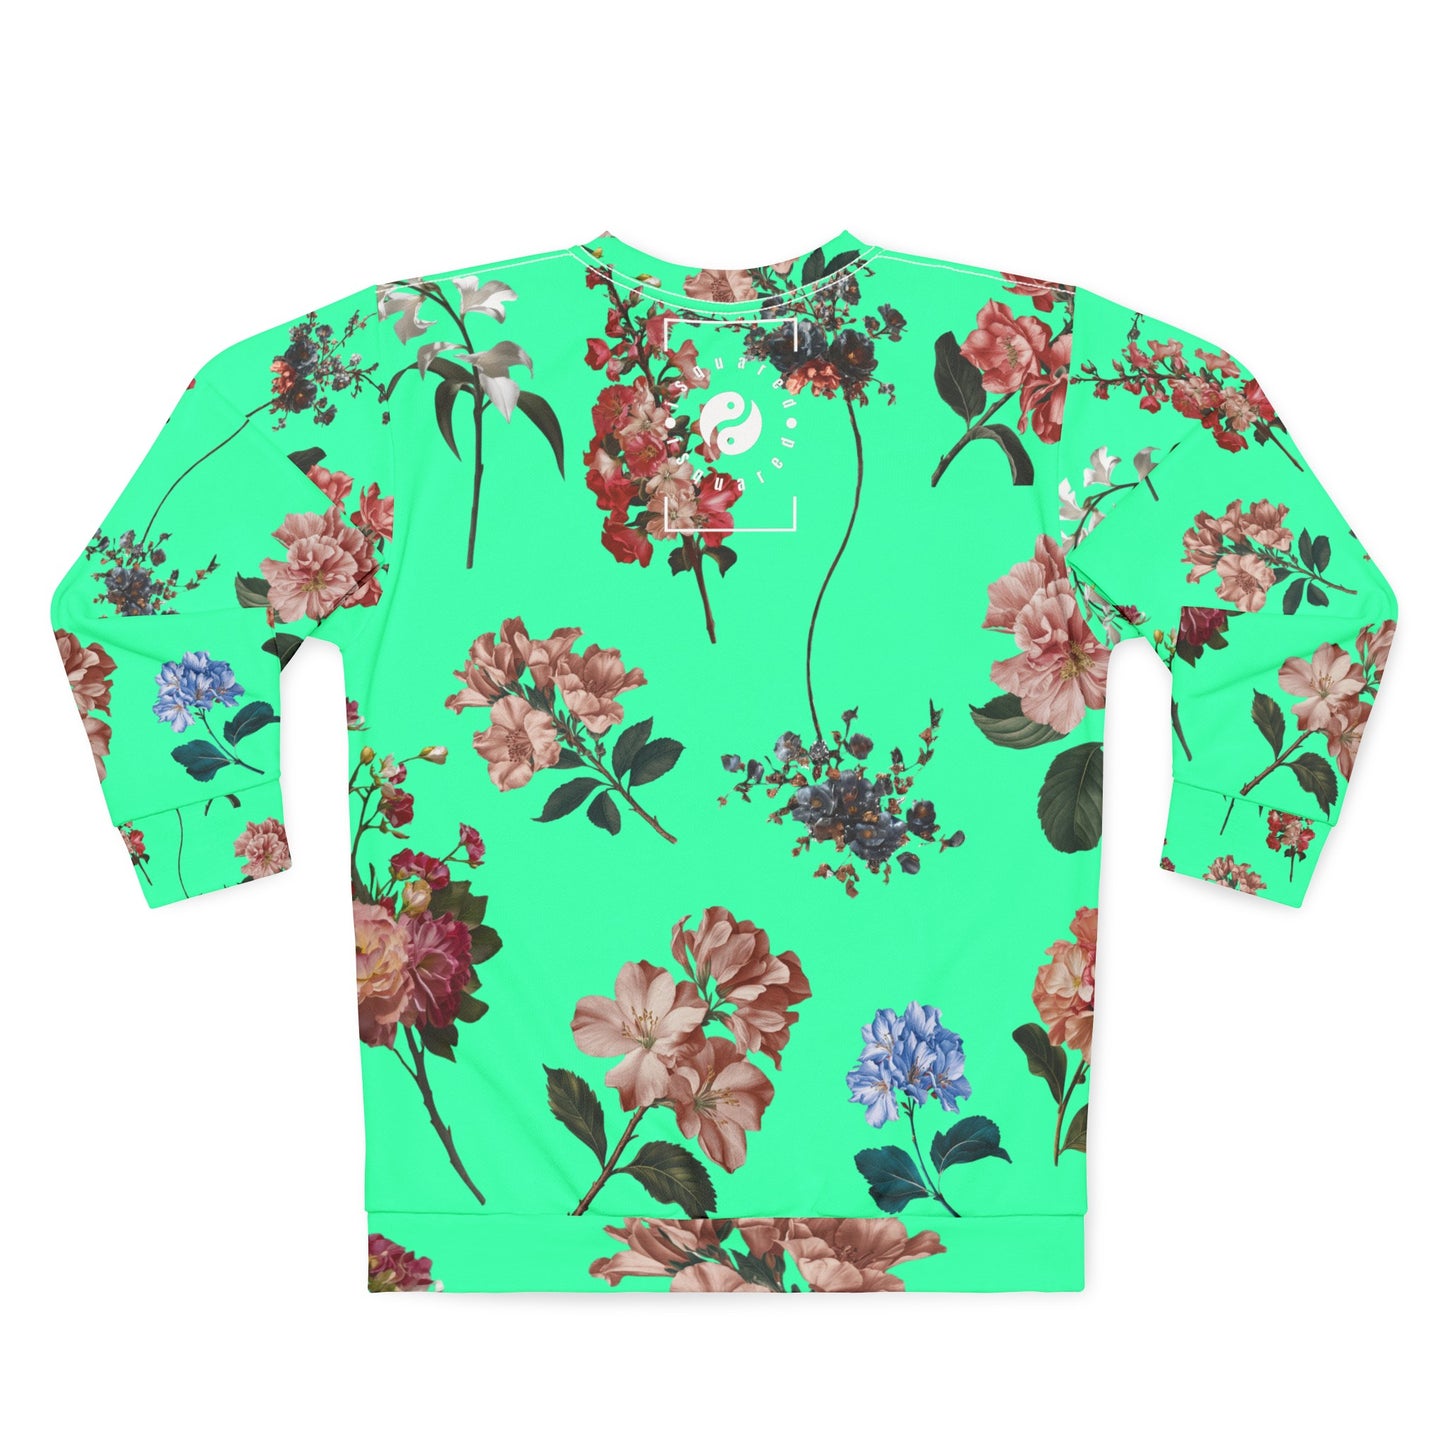 Botanicals on Turquoise - Unisex Sweatshirt